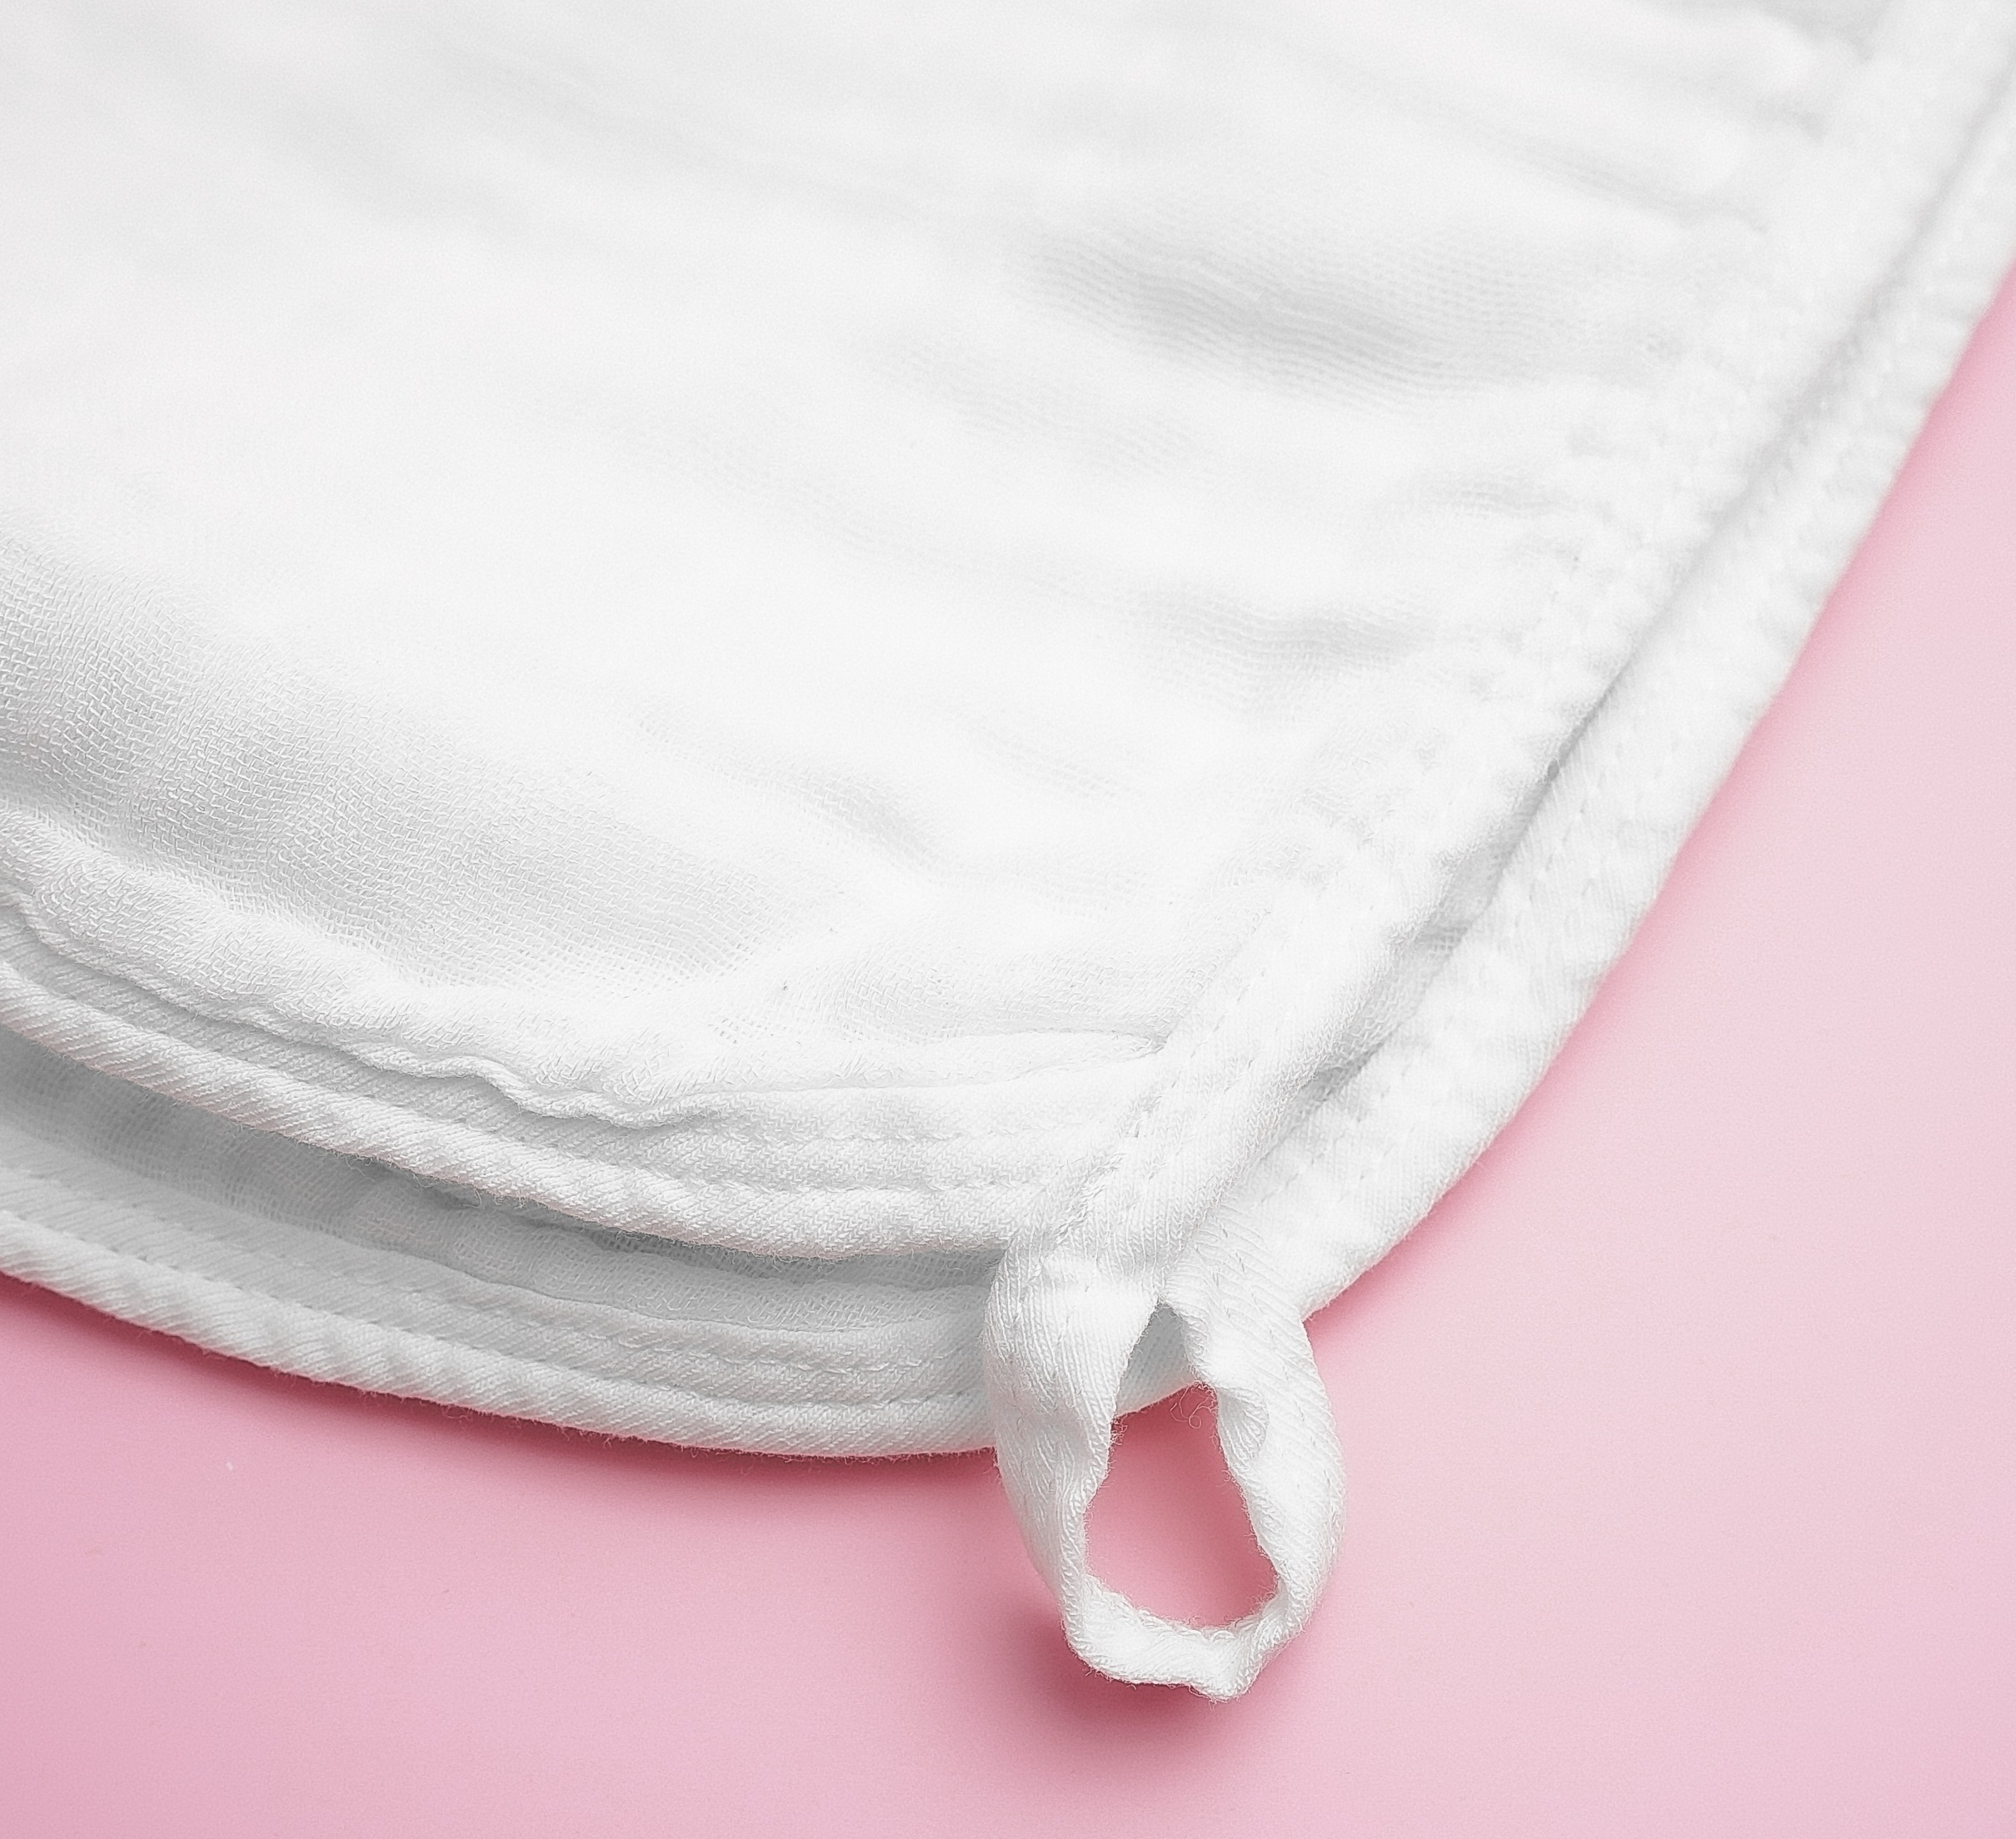 Khăn tắm khăn quấn ủ bonny trắng 100% sợi tre 4 lớp siêu mềm mịn, thấm hút - ảnh sản phẩm 8